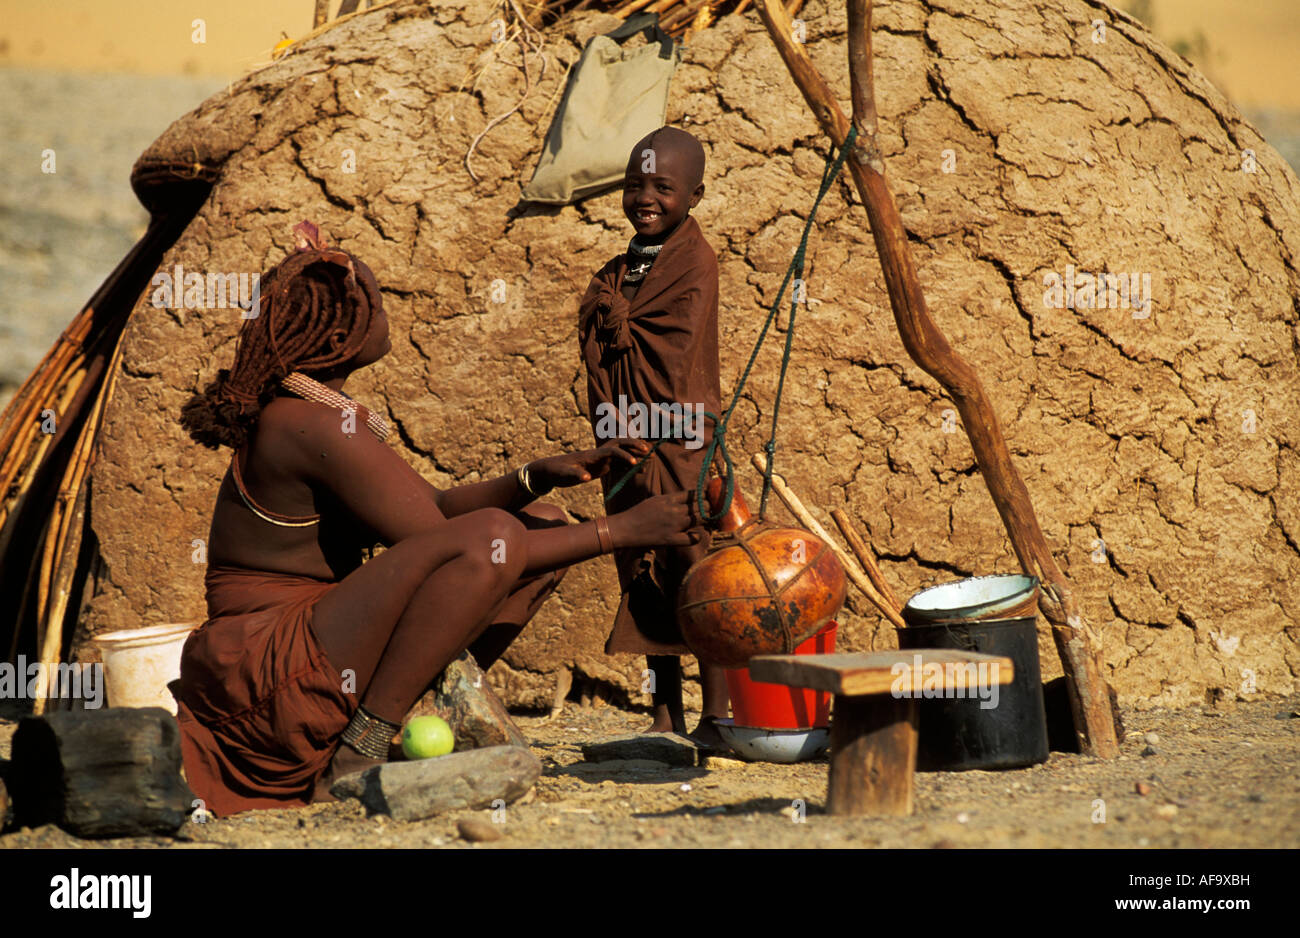 Femme Himba et enfant faisant de crème en calebasse en dehors de leur hutte de terre en forme de dôme, de la rivière Kunene Namibie Kaokoveld ; Banque D'Images